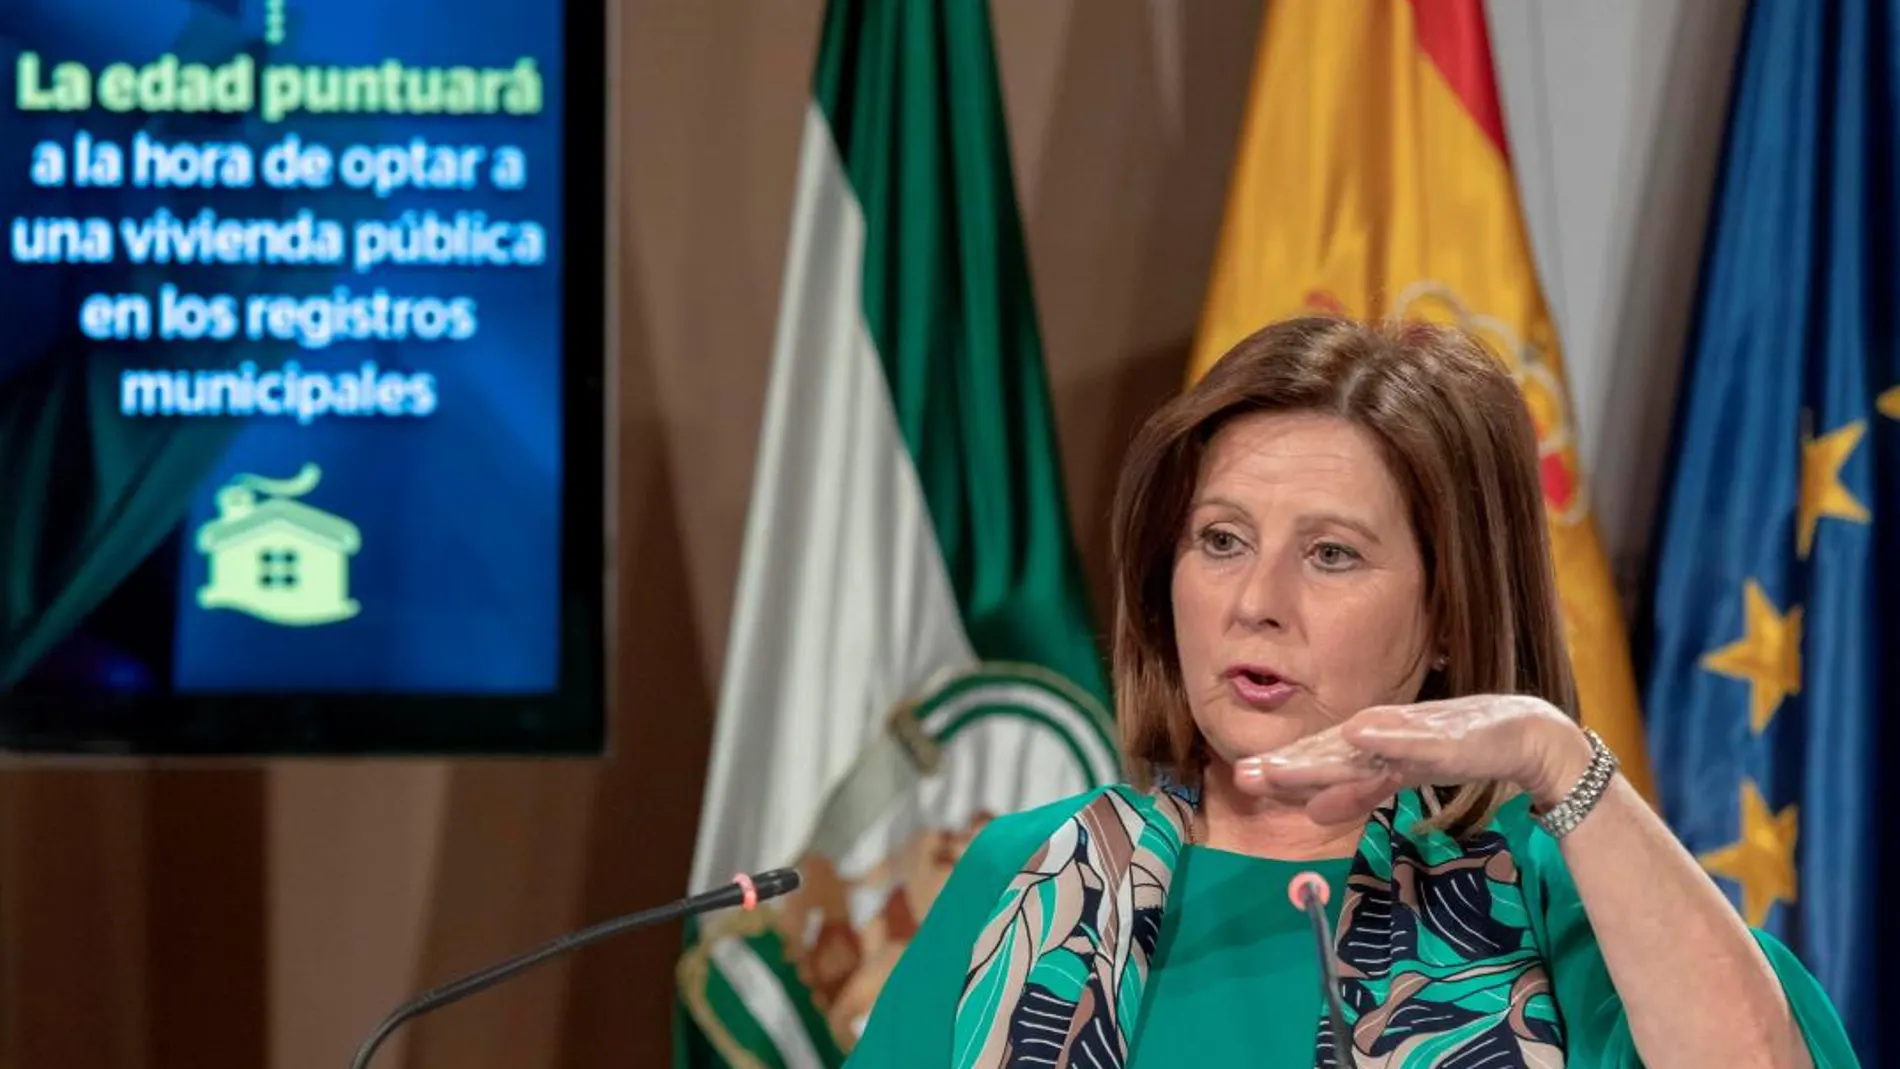 La consejera María José Sánchez Rubio es la responsable de las políticas de protección a la infancia en la comunidad (Foto: Efe)